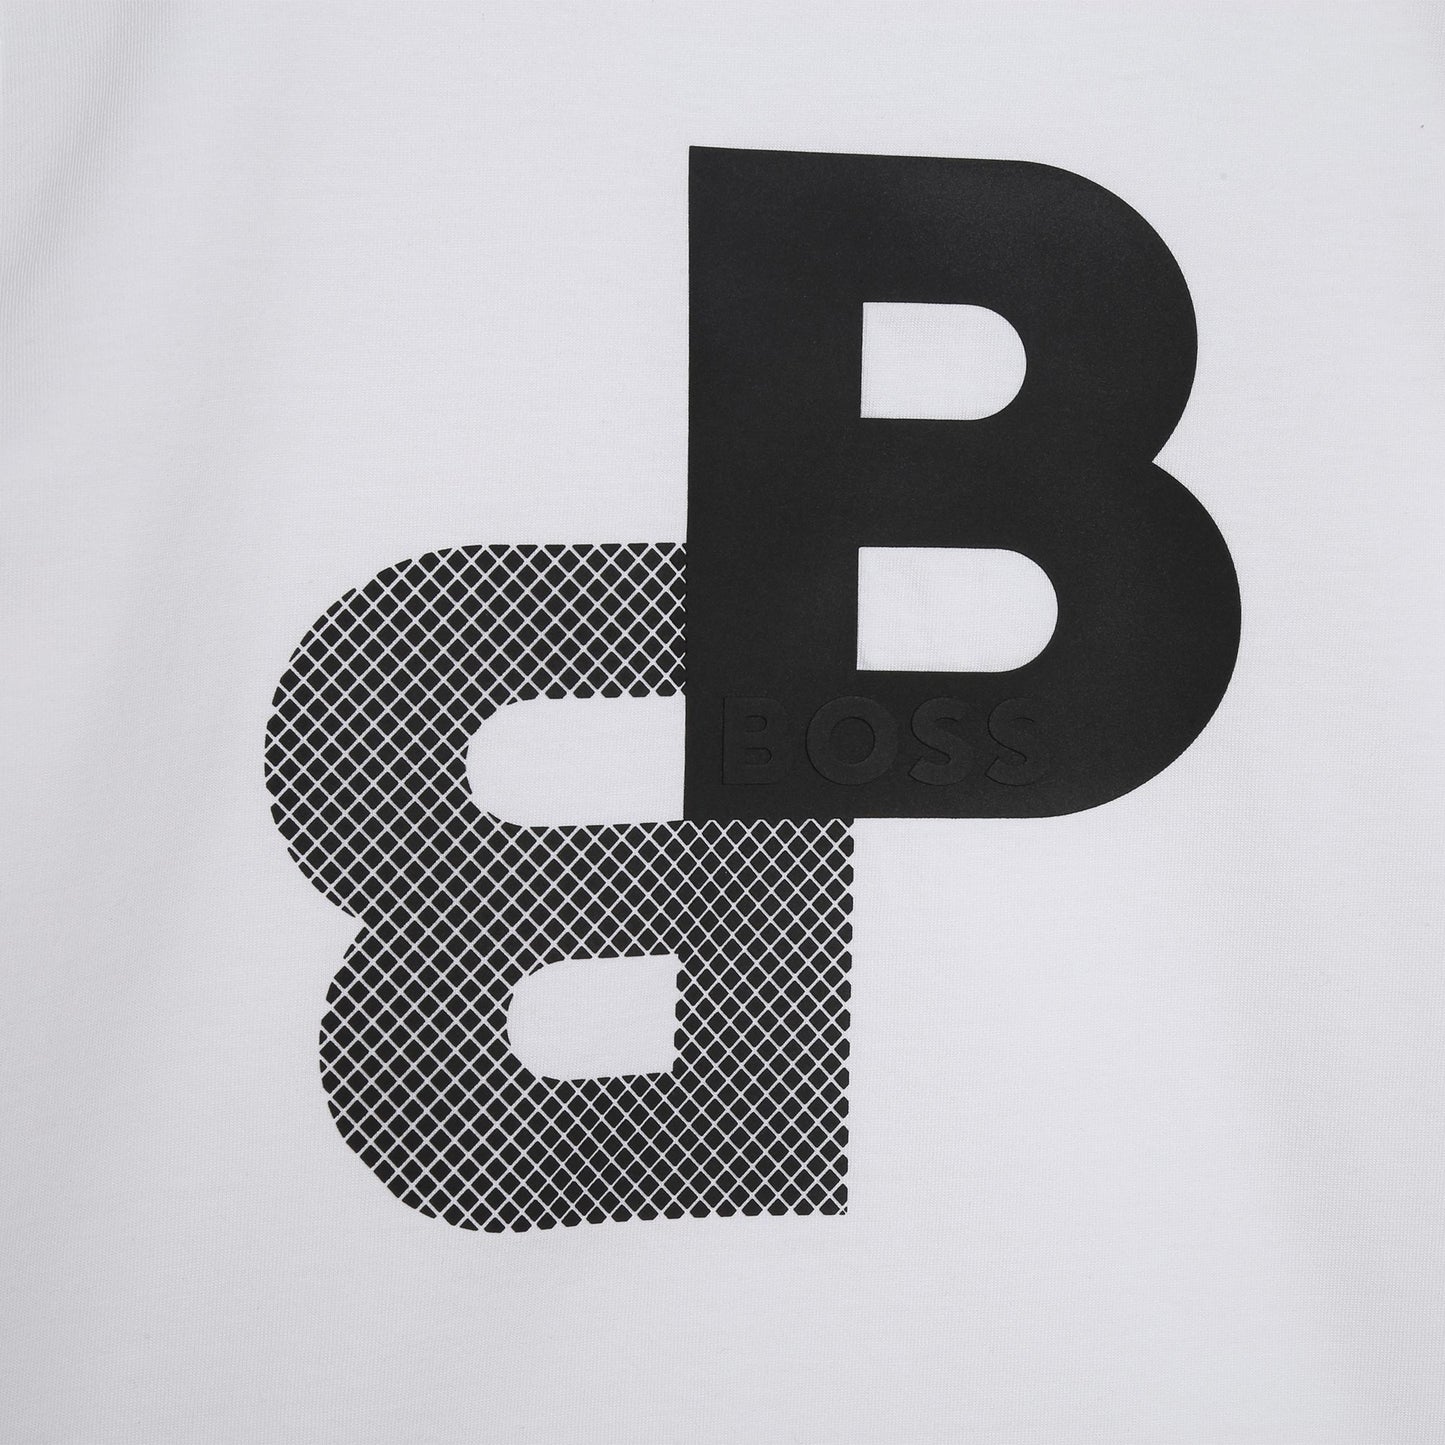 BOSS Boys White Logo T-Shirt